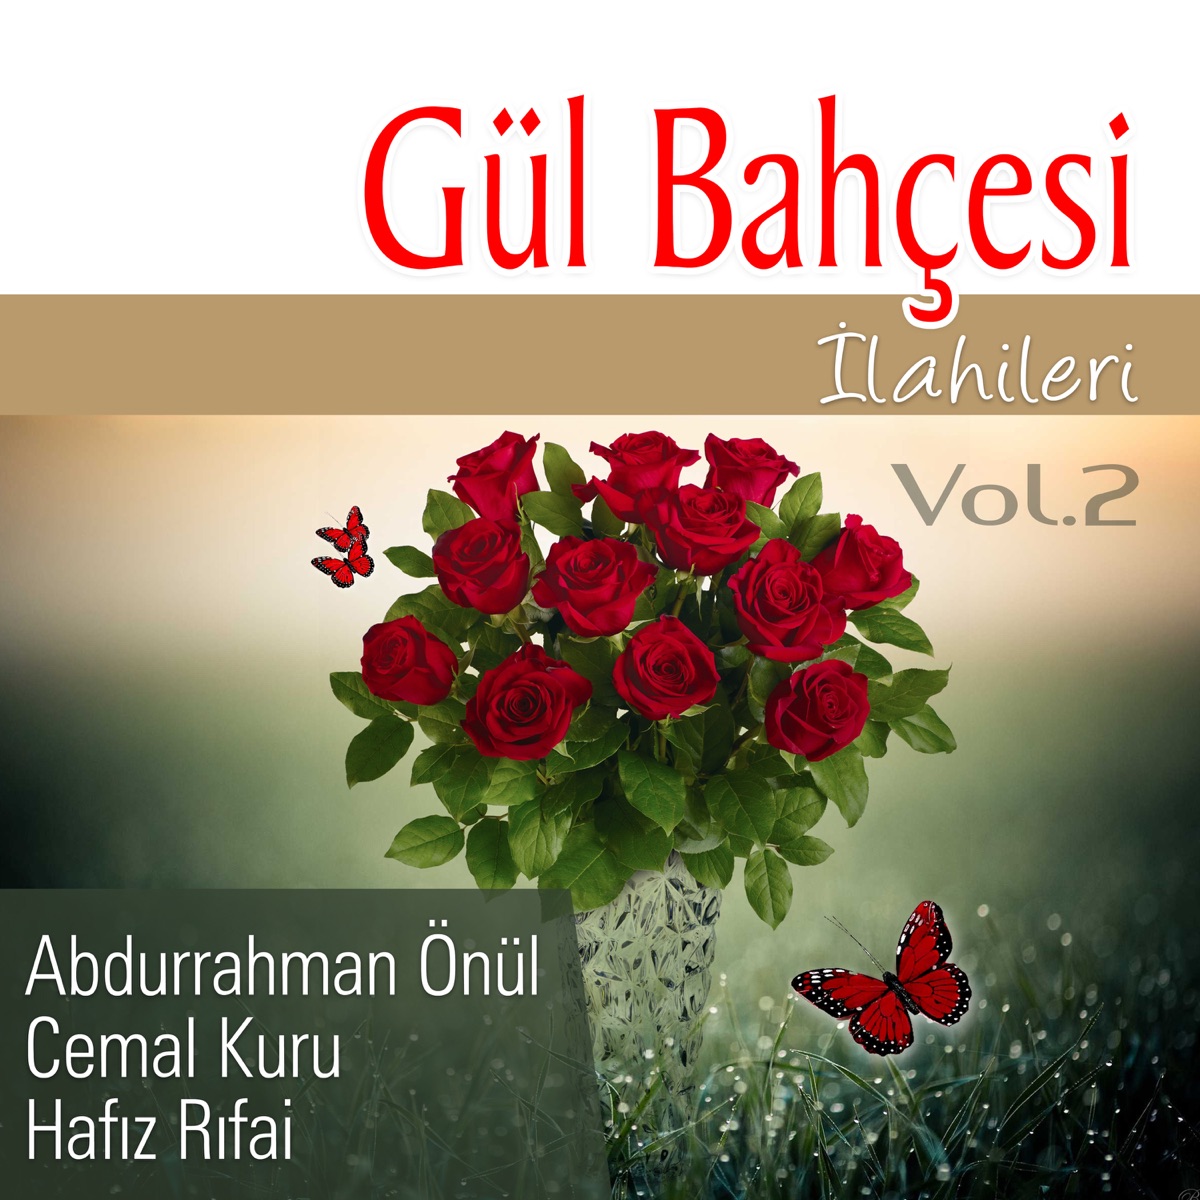 Gül Bahçesi İlahileri, Vol.2 - Album by Abdurrahman Önül, Cemal Kuru &  Hafız Rıfai - Apple Music